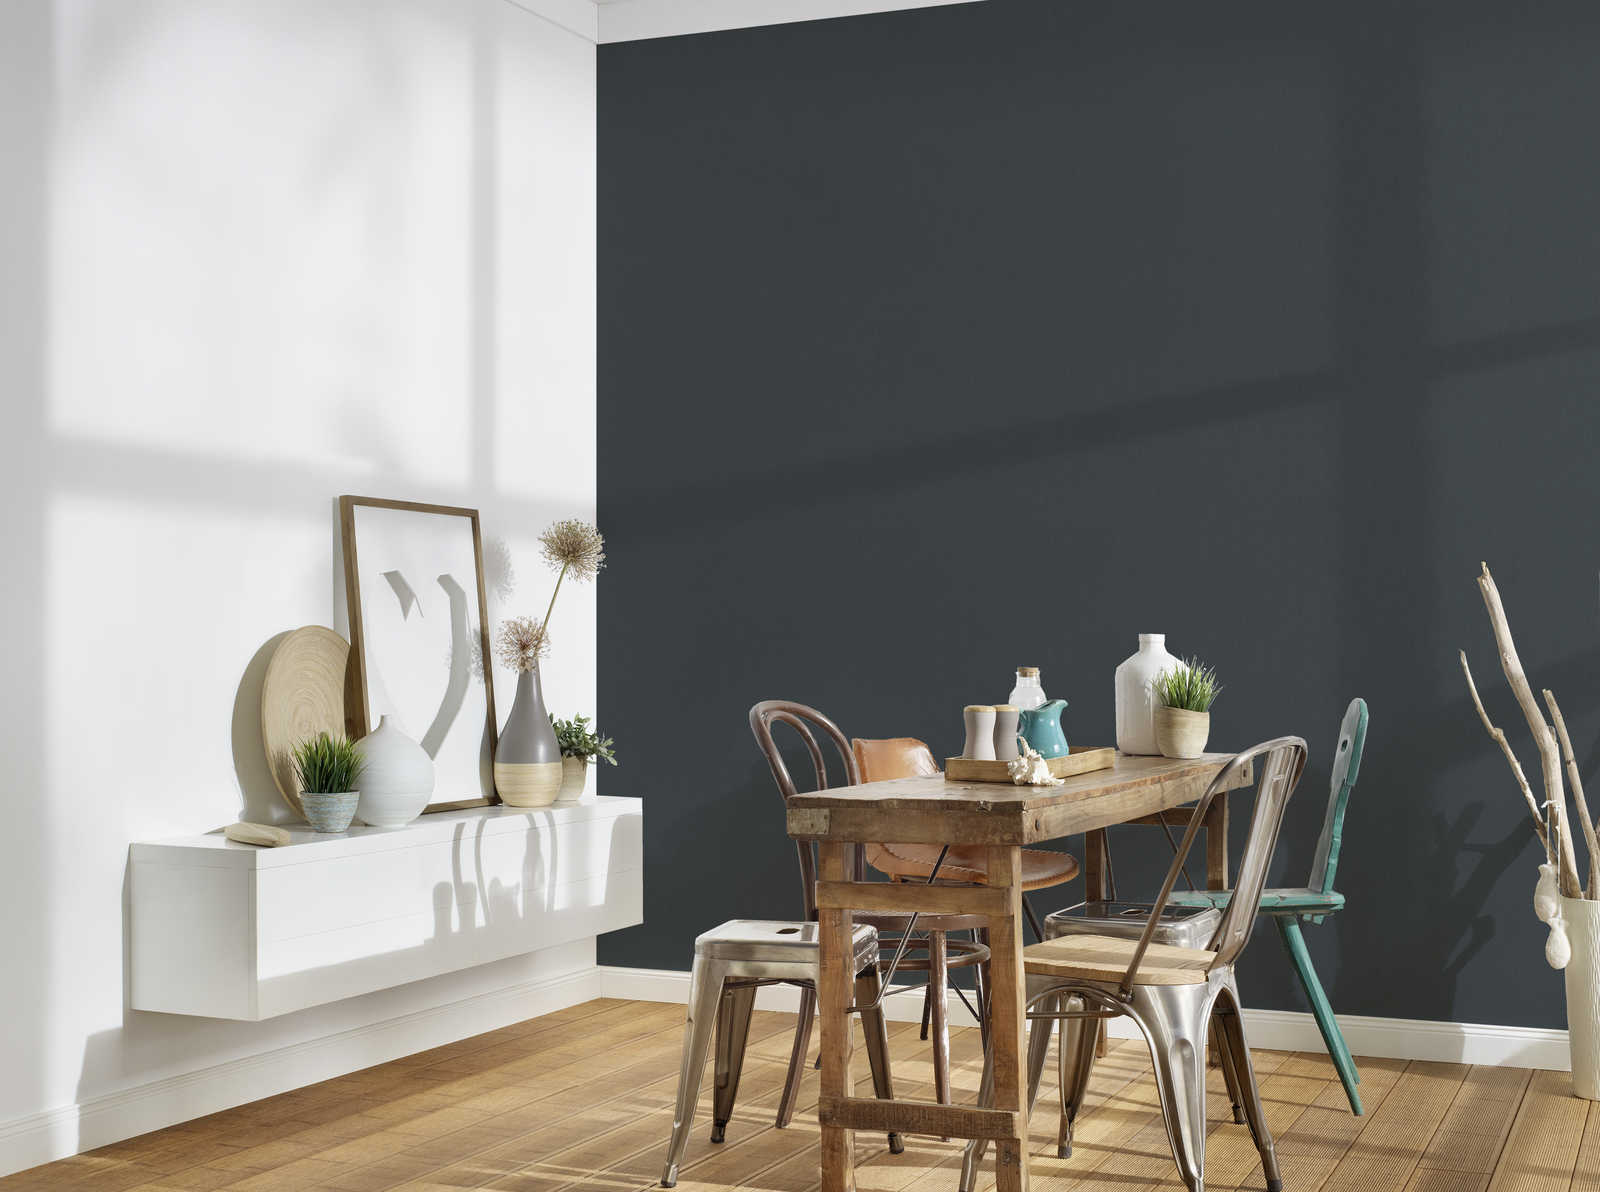             Wallpaper black matt with linen look & textile effect
        